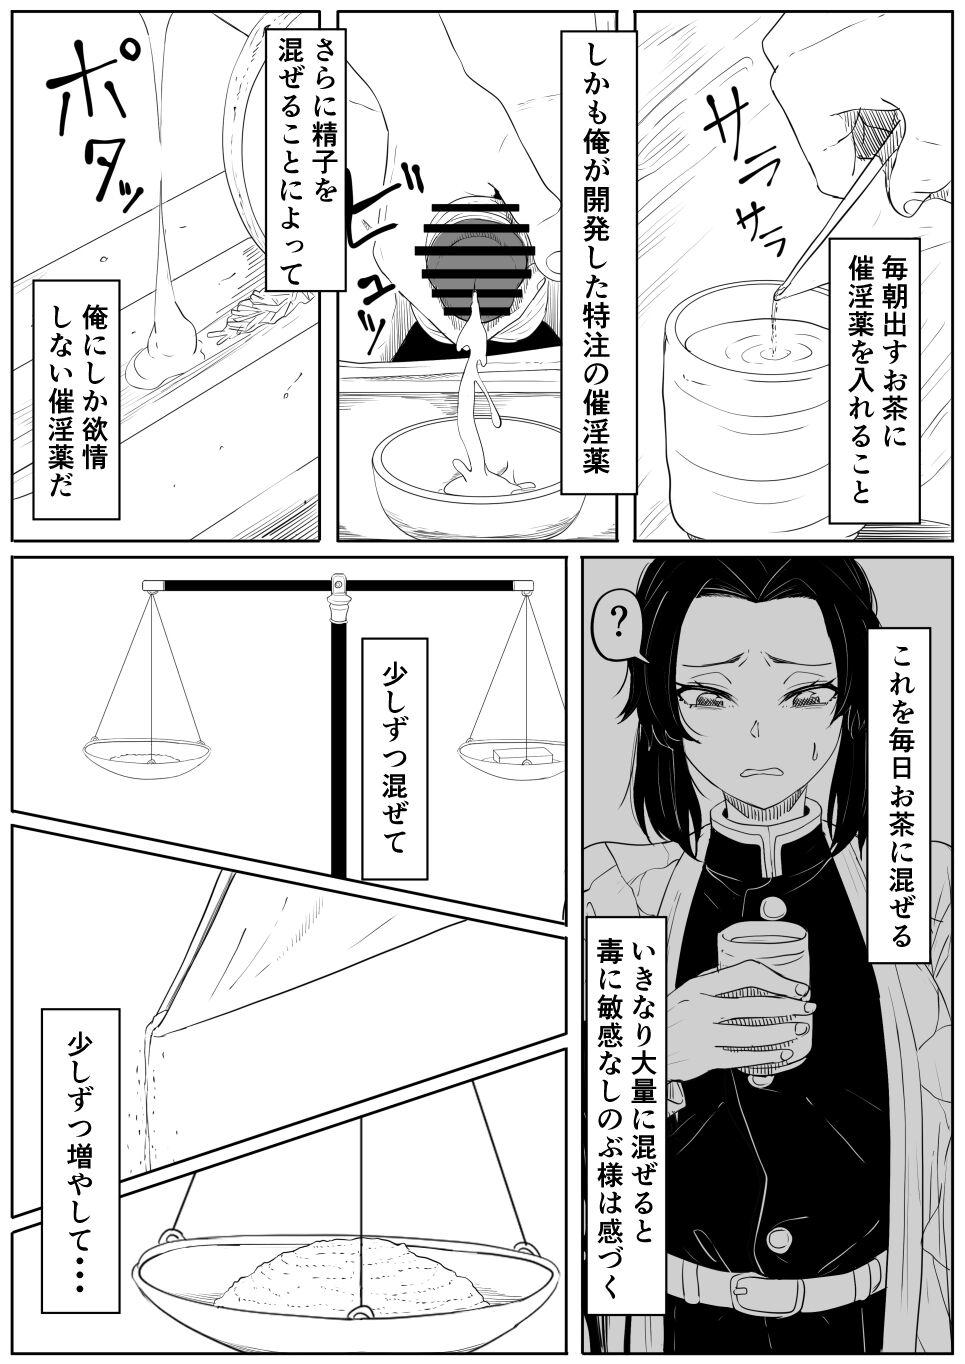 Assgape Shinobu wa Muchuu - Kimetsu no yaiba | demon slayer French - Page 4